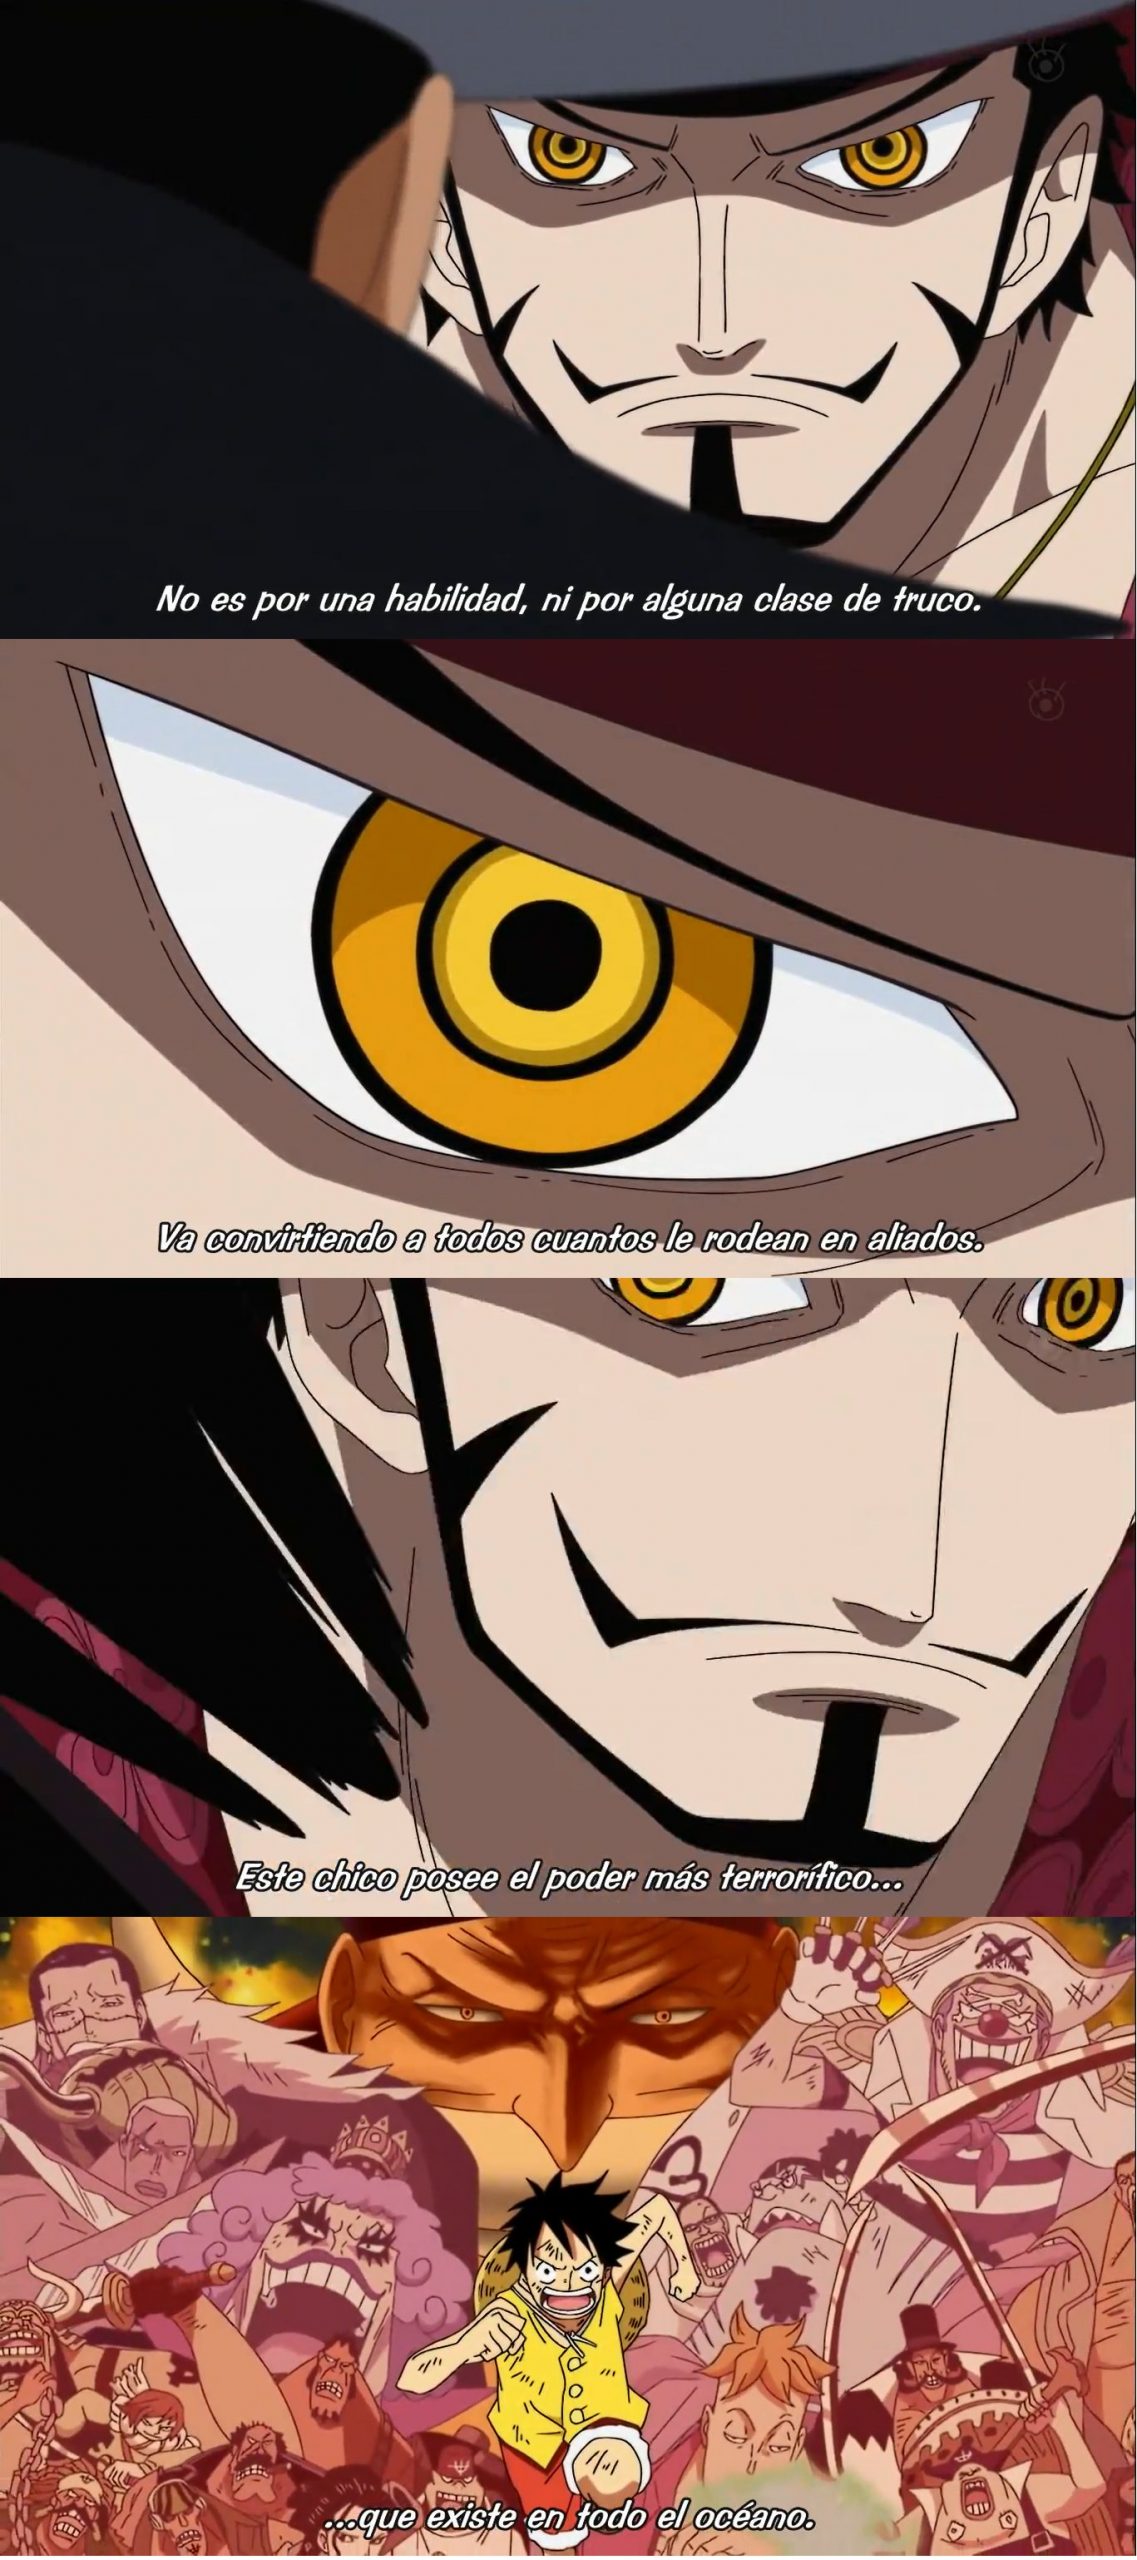 Uno de sus enemigos reconoce que el poder de Luffy son sus aliados